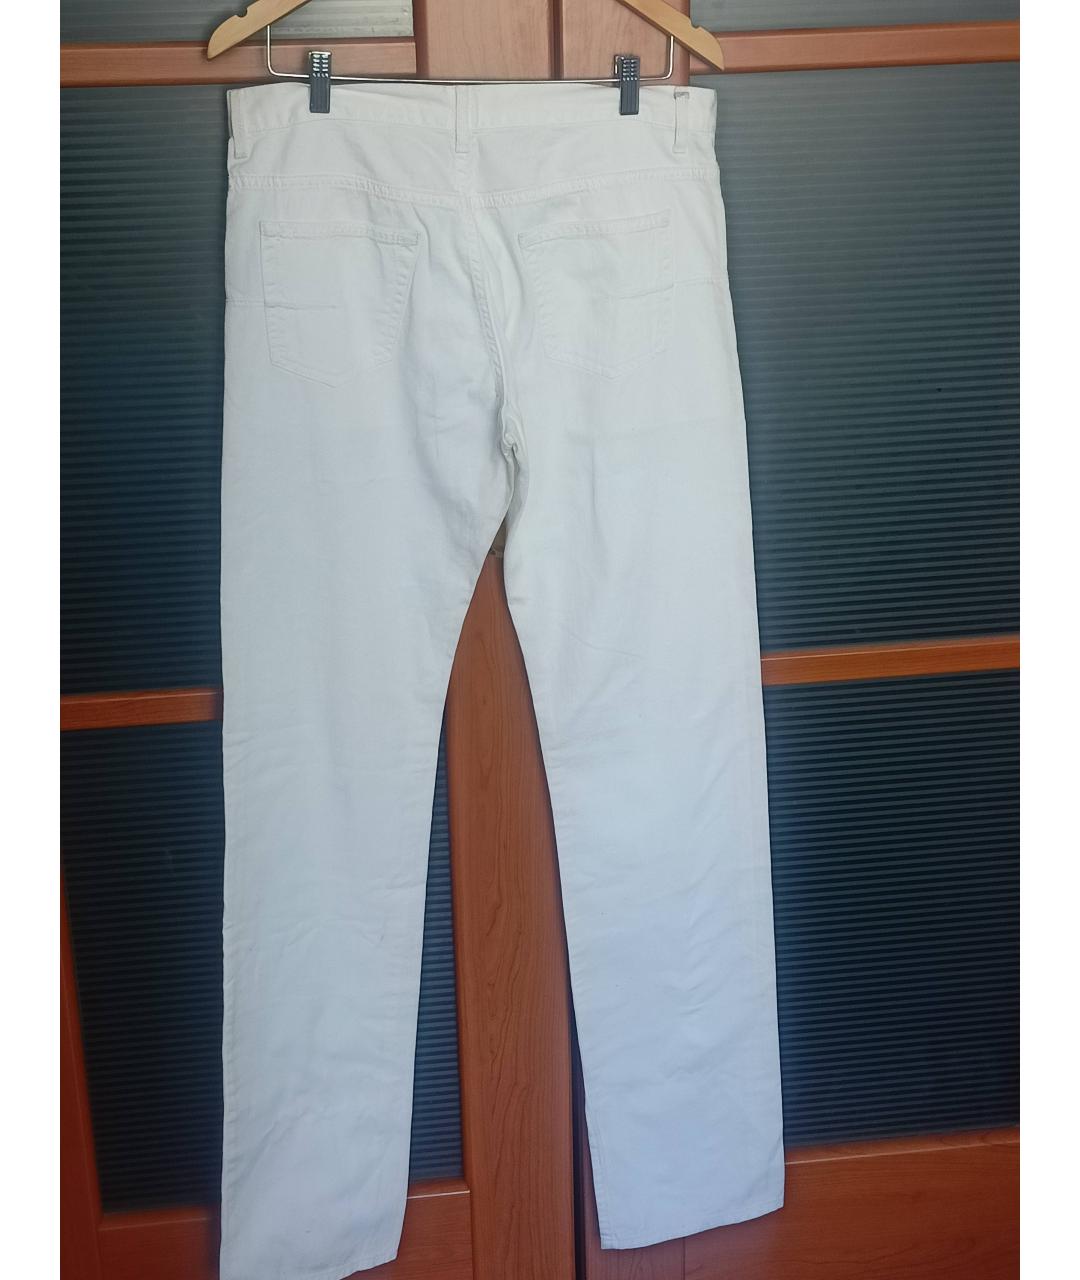 CHRISTIAN DIOR PRE-OWNED Белые хлопковые прямые джинсы, фото 2